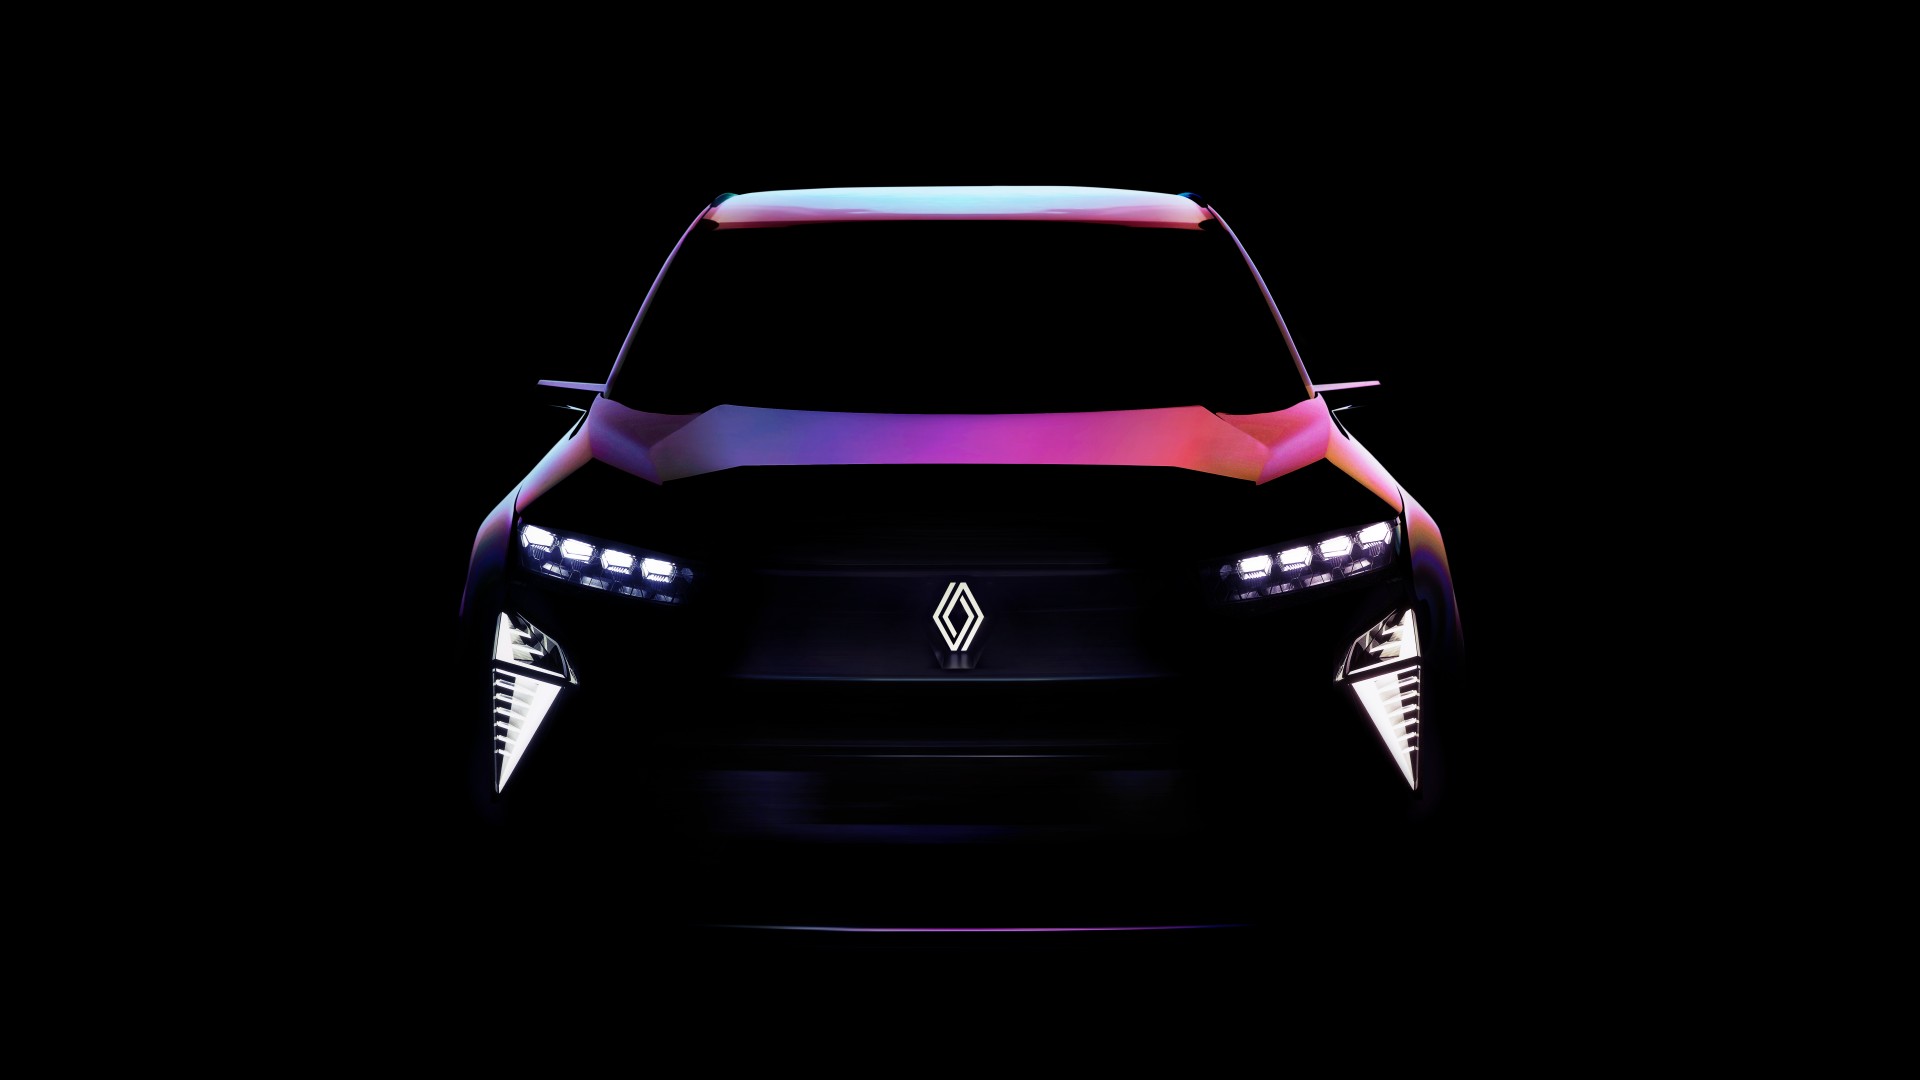 2022-Renault-Concept-Teaser-1.jpg